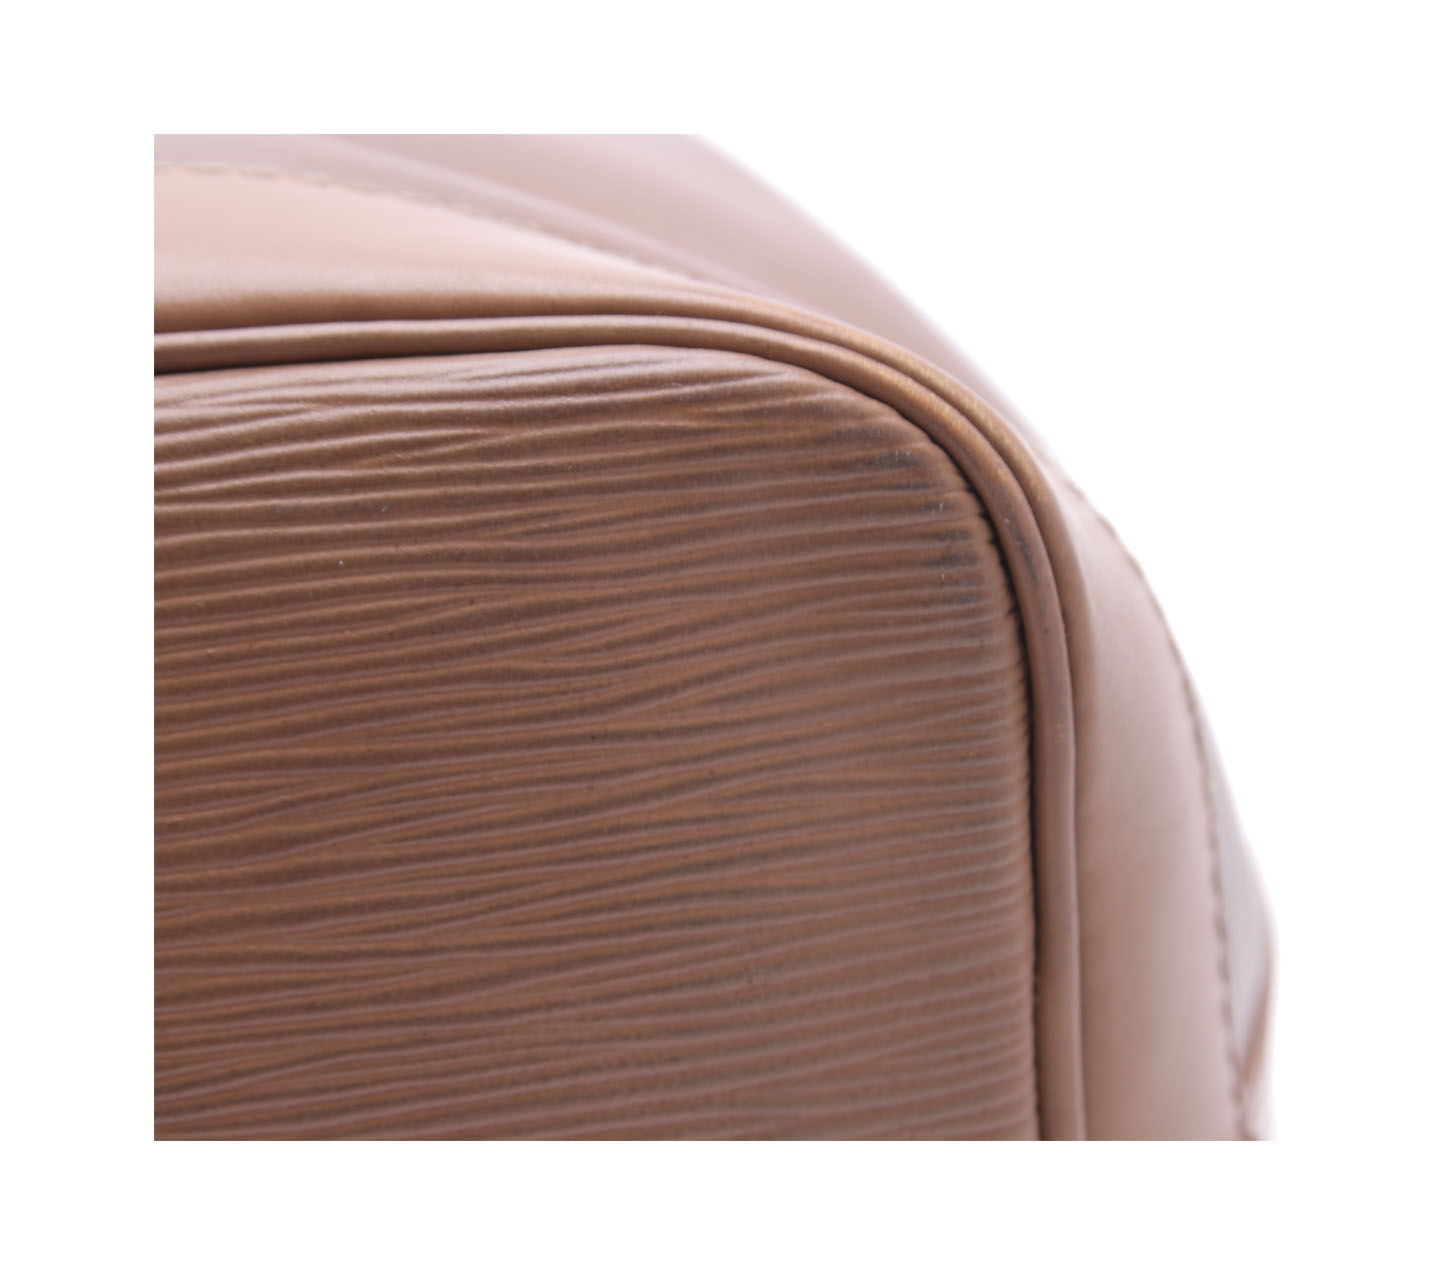 Louis Vuitton Brown Neonoe Epi Leather Shoulder Bag 